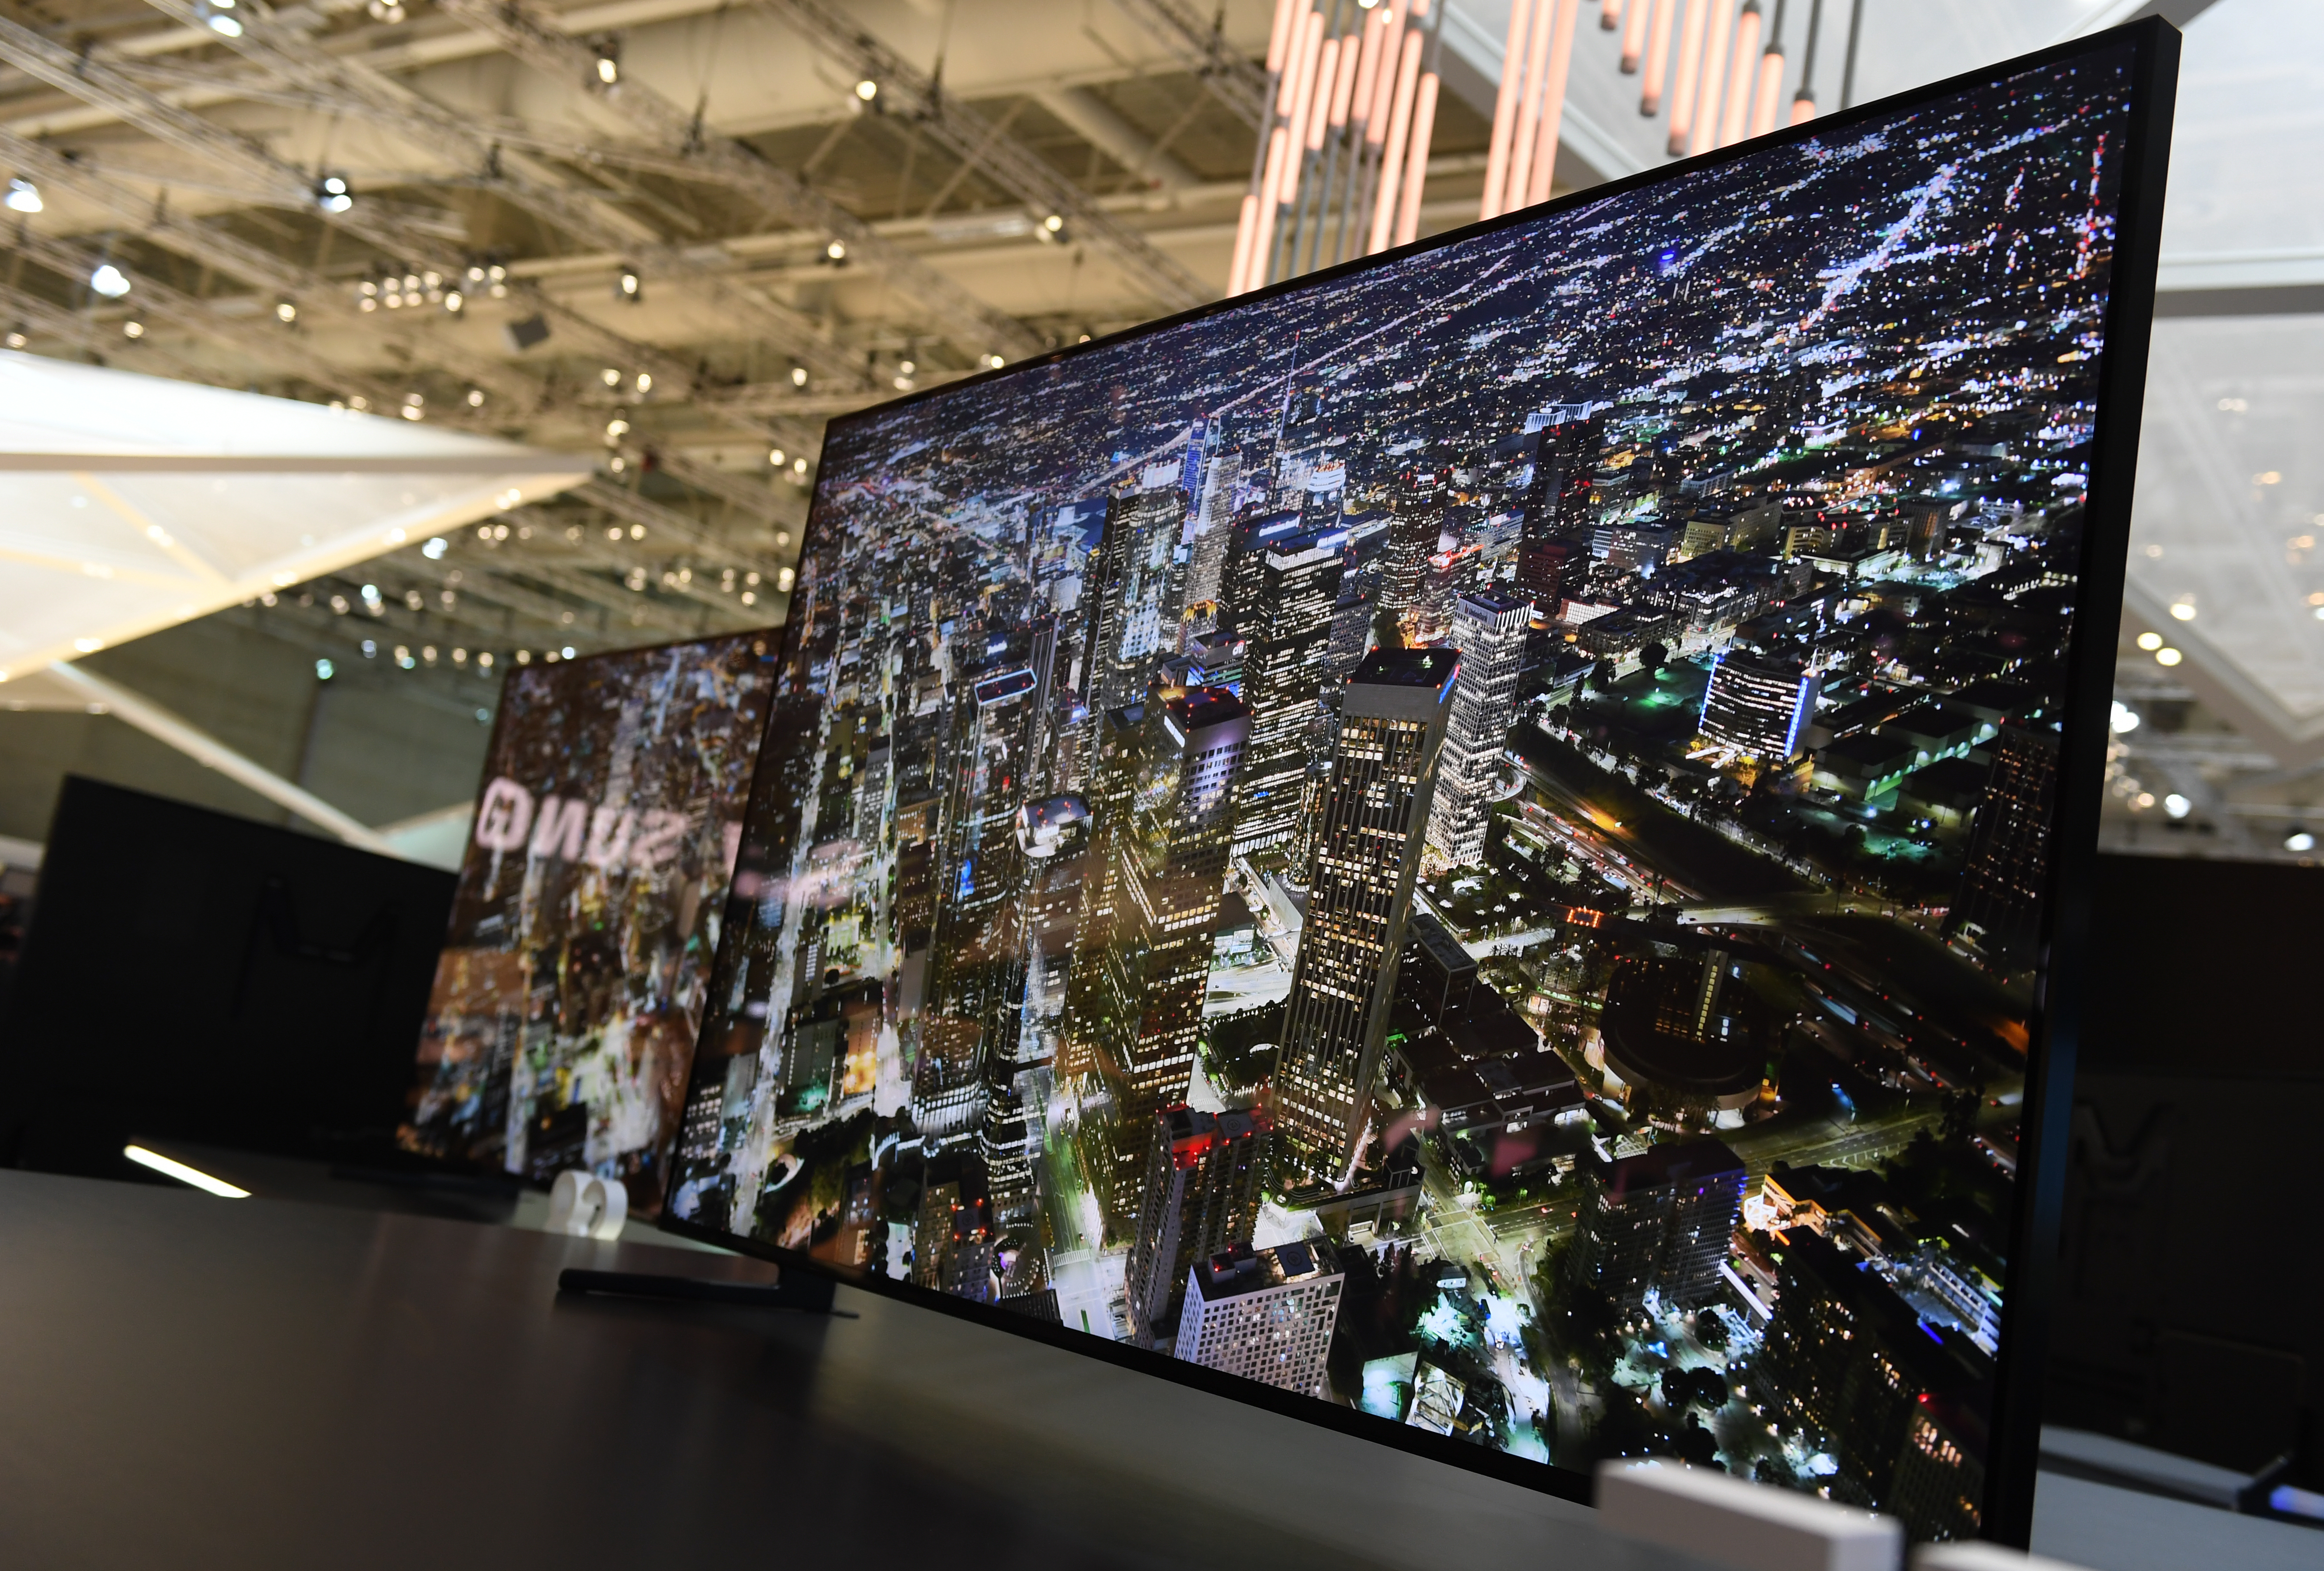 Televisor nuevo: ¿Qué tamaño y qué tecnología debería?